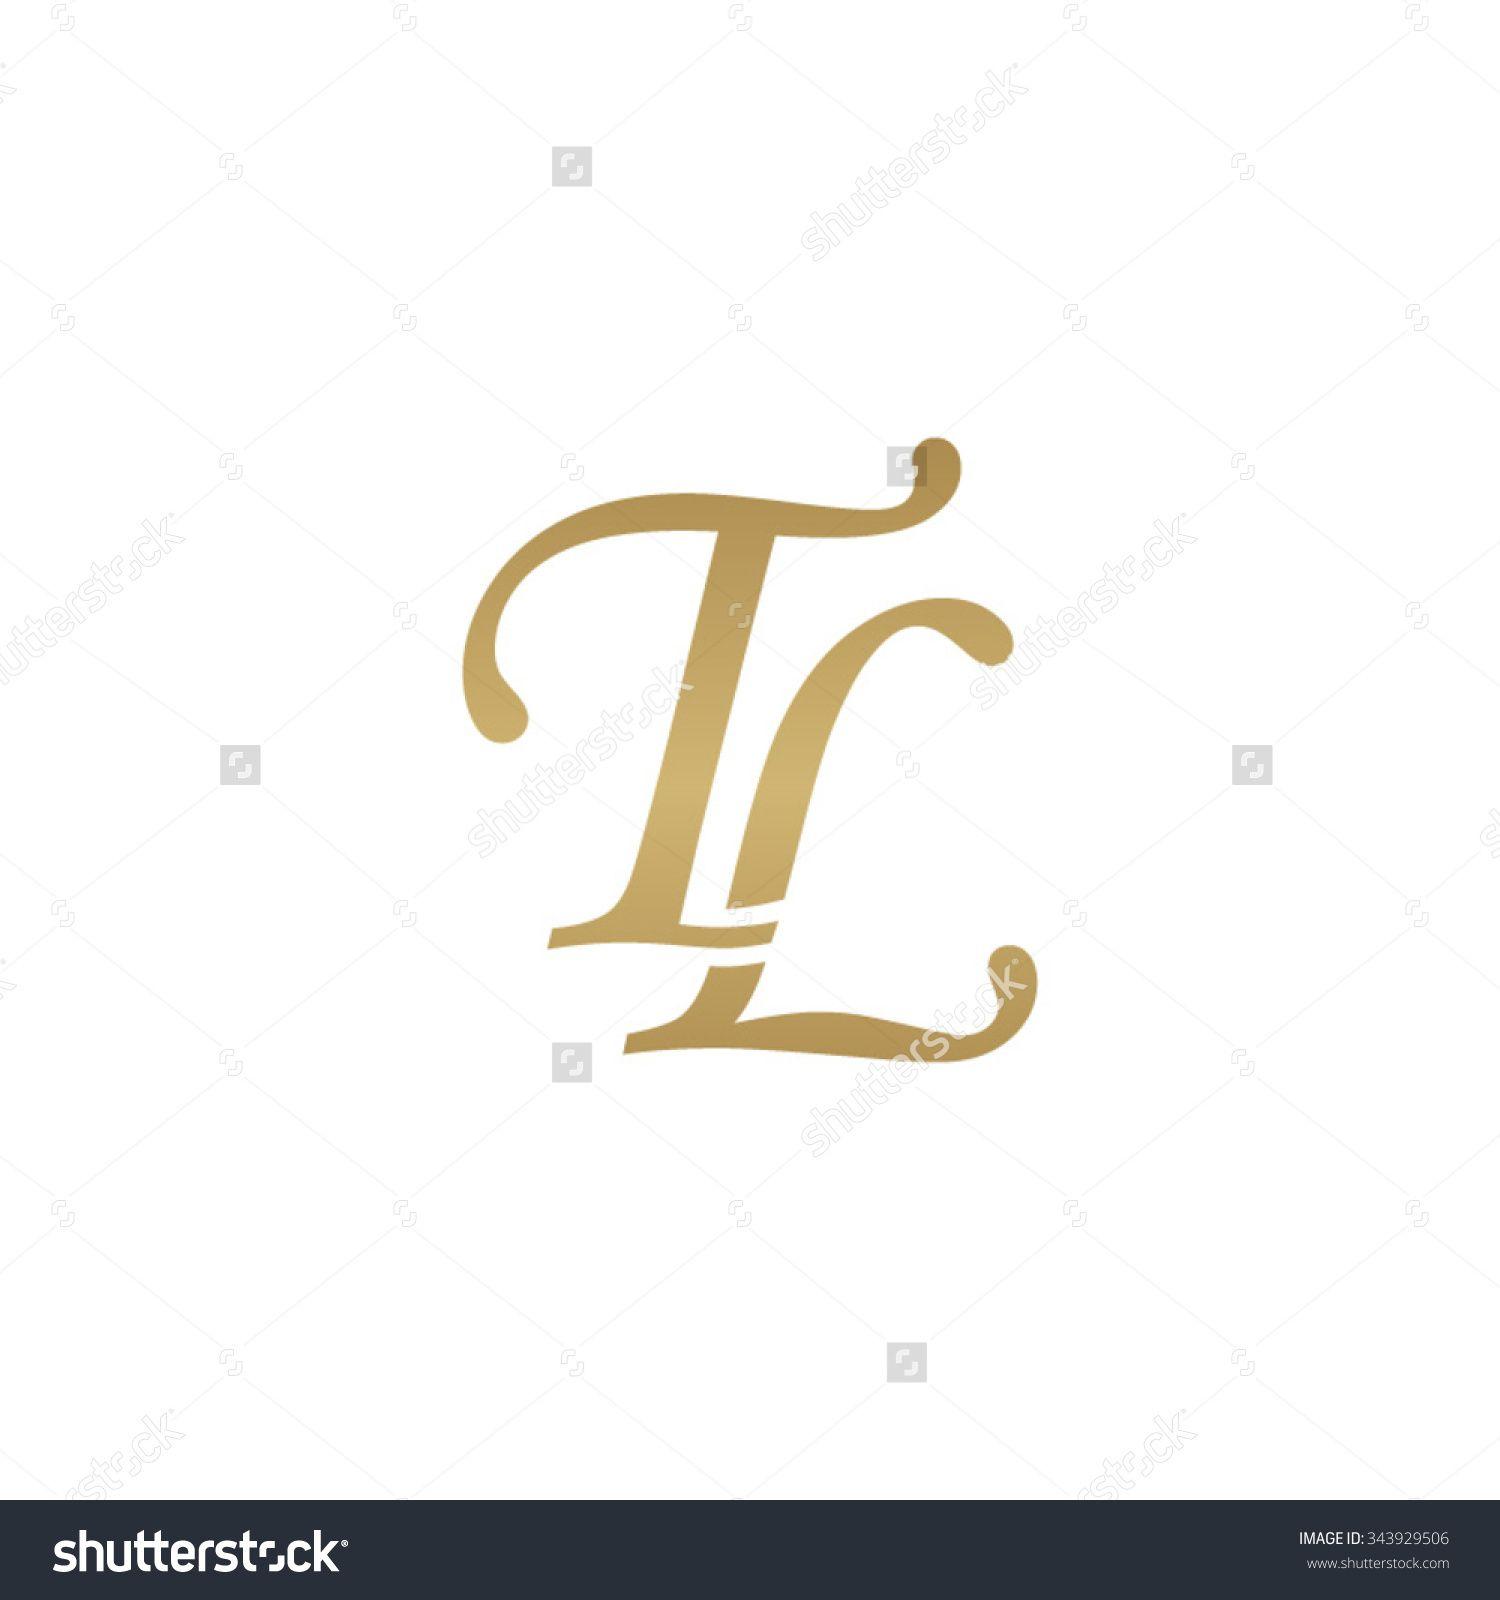 TL Logo - Image result for tl logo. tl logo. Logos, Design